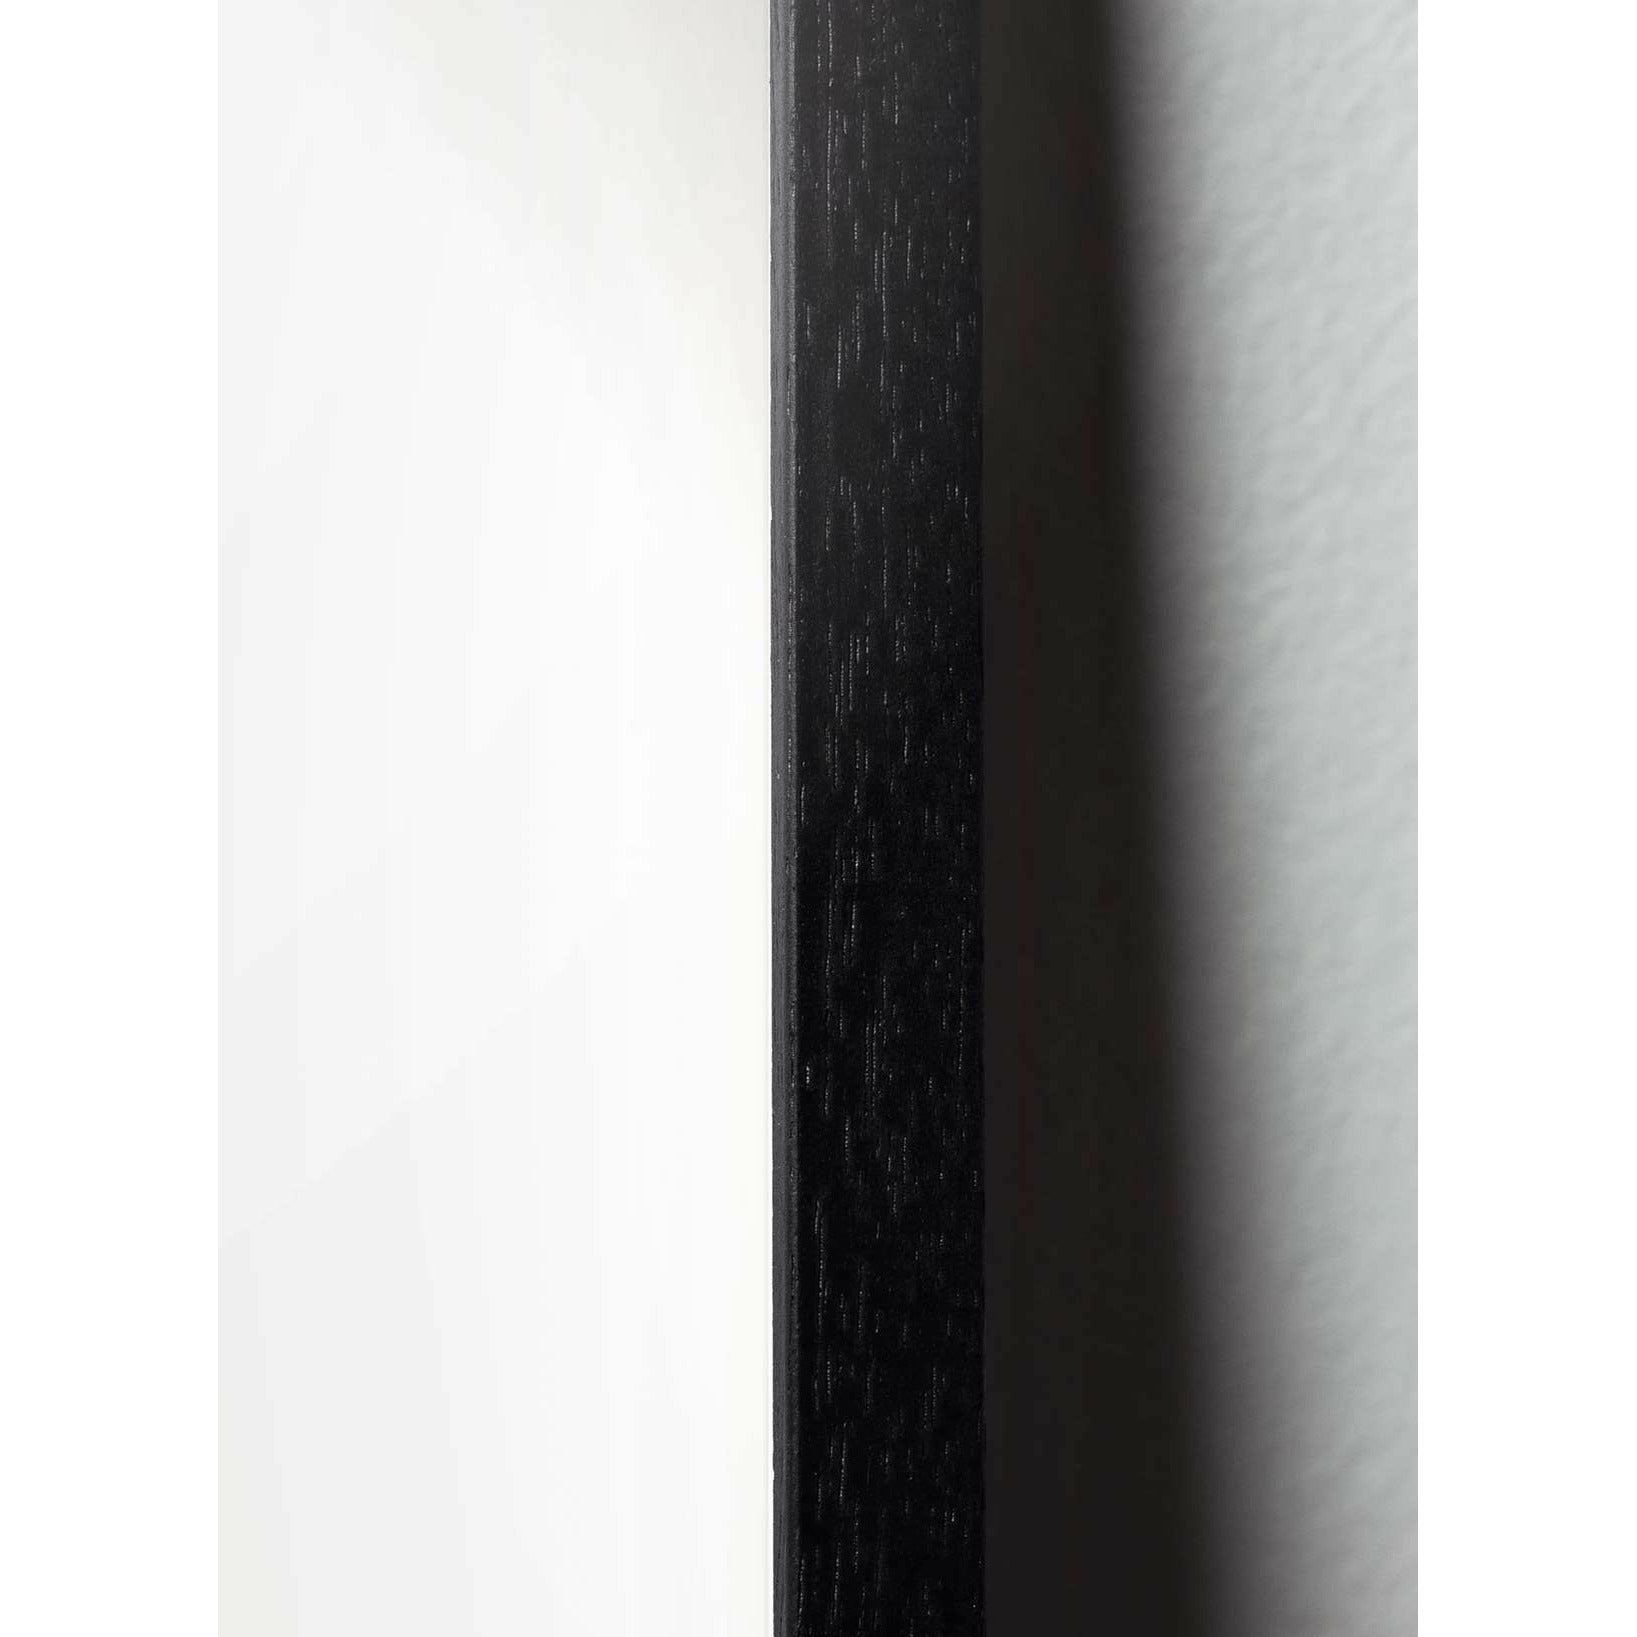 Plakát vejce z mozku, rám vyrobený z černého lakovaného dřeva 70 x100 cm, hnědá